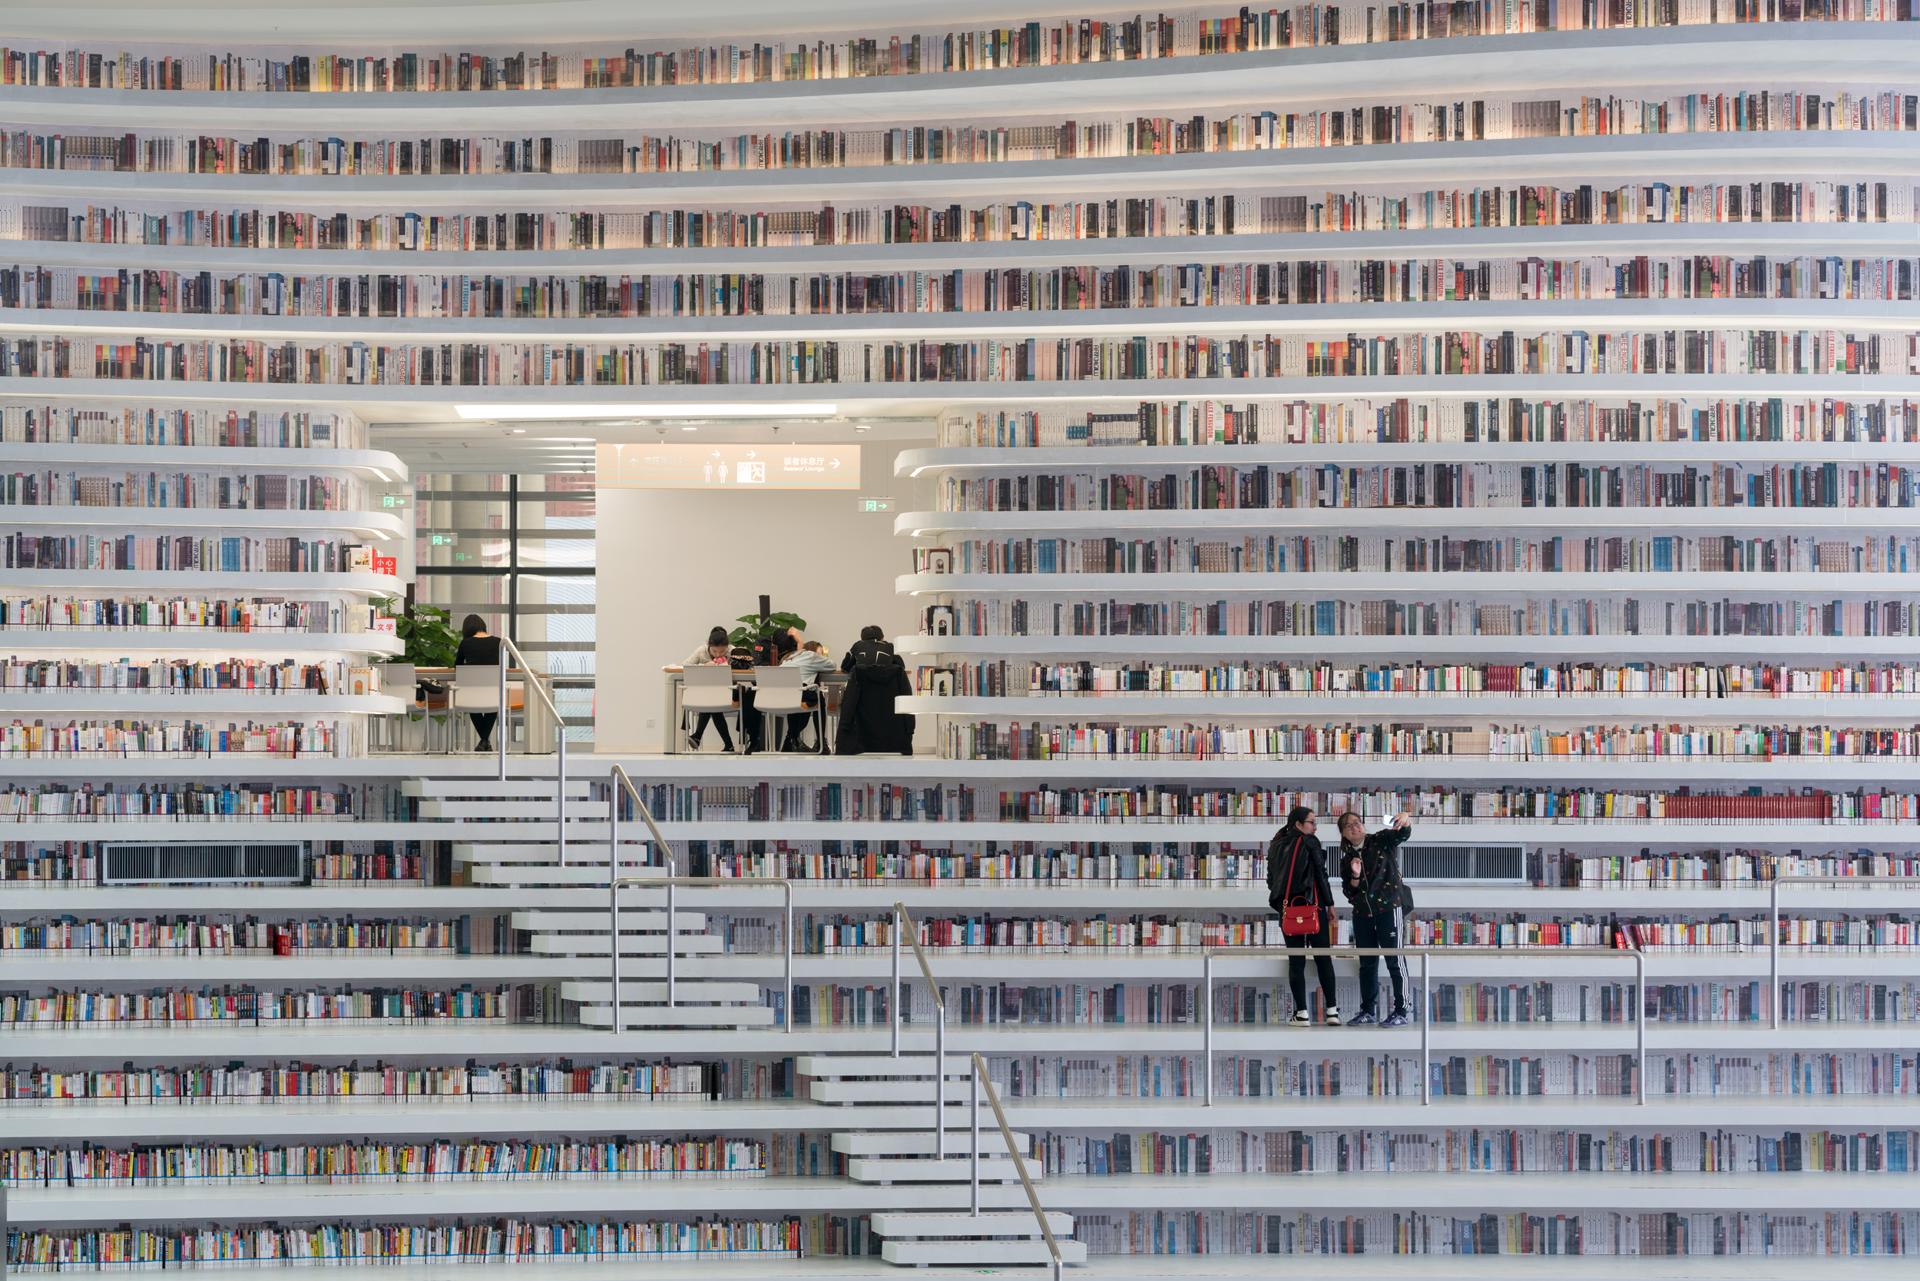 Tianjin Binhai Library, China